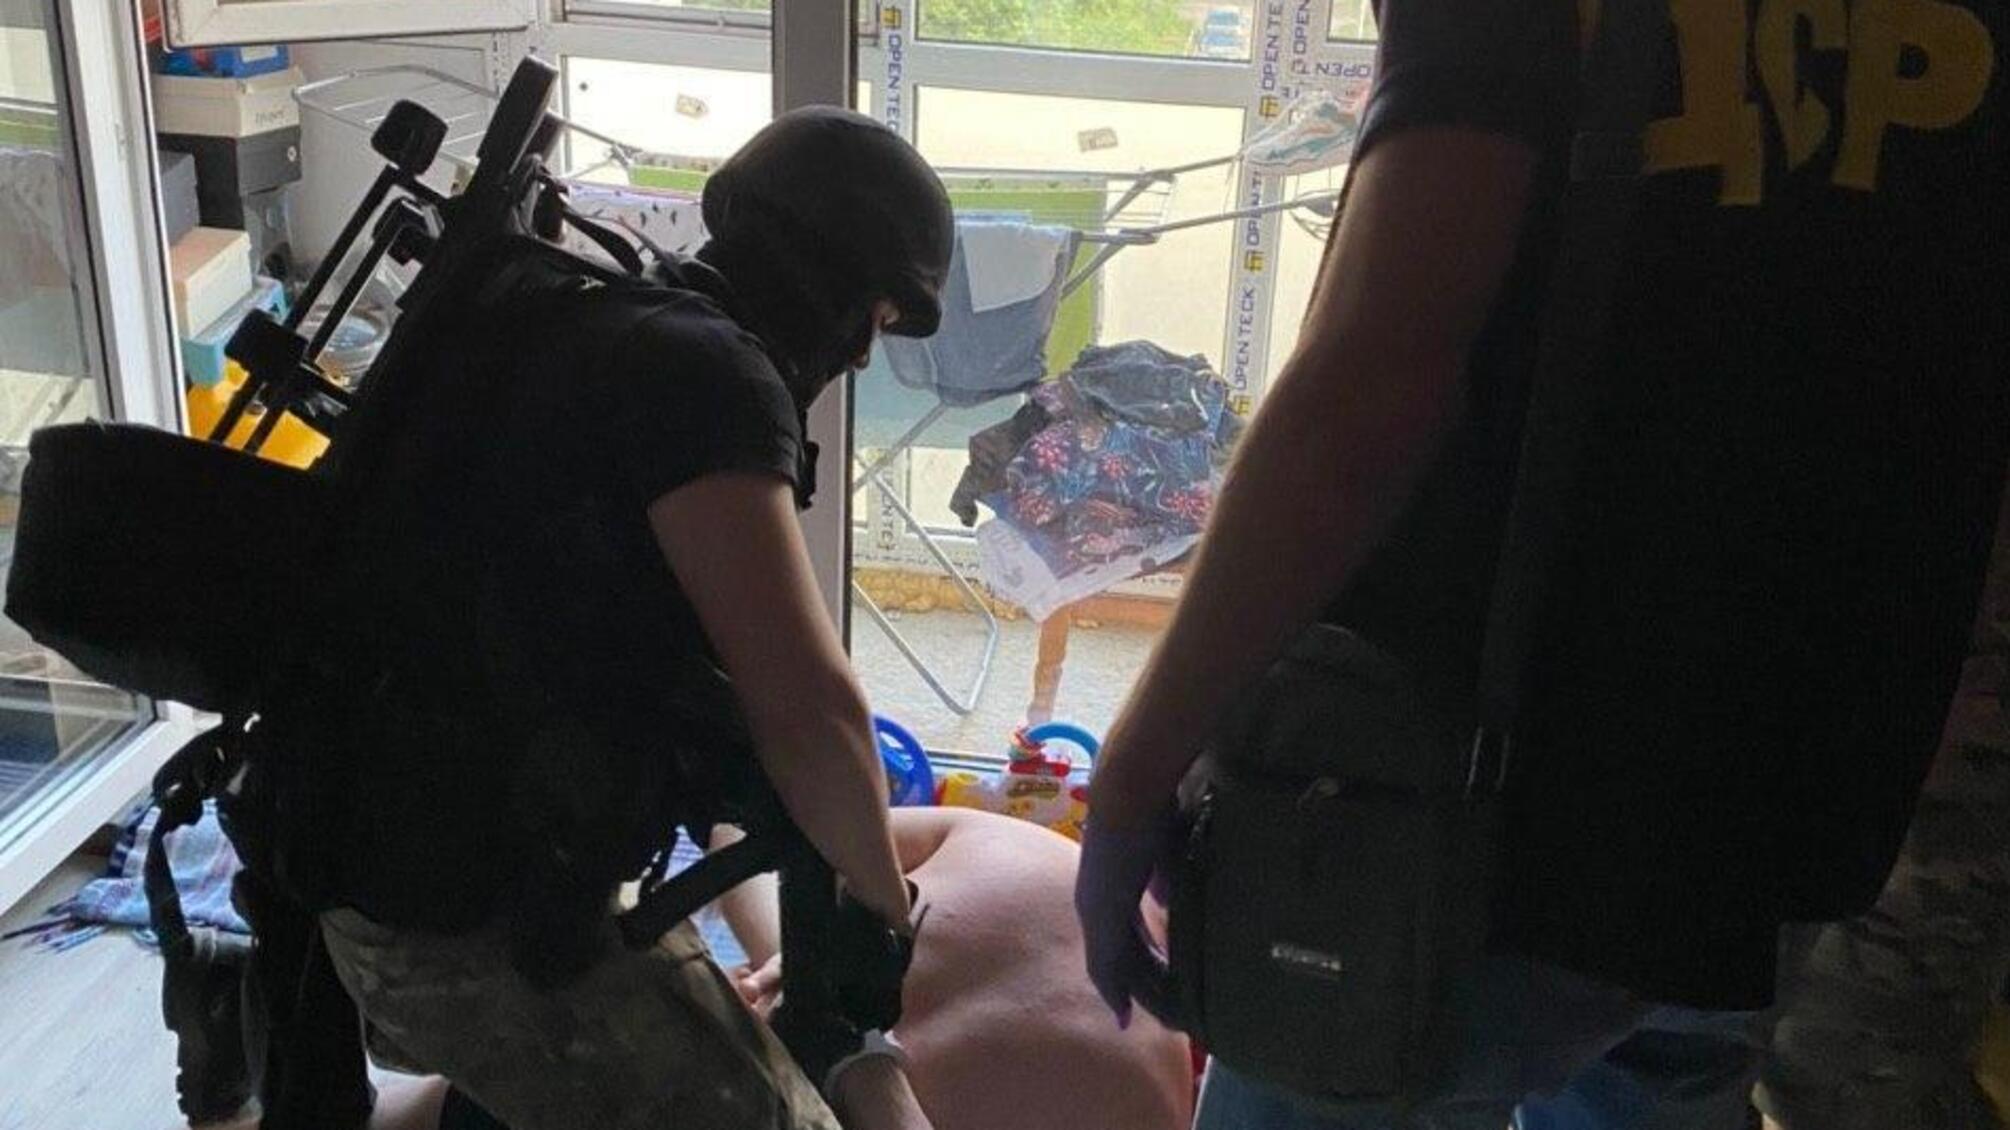 Поліцейські Київщині затримали злочинне угруповання, яке «спеціалізувалося» на викраденні людей для заволодіння їхніми квартирами